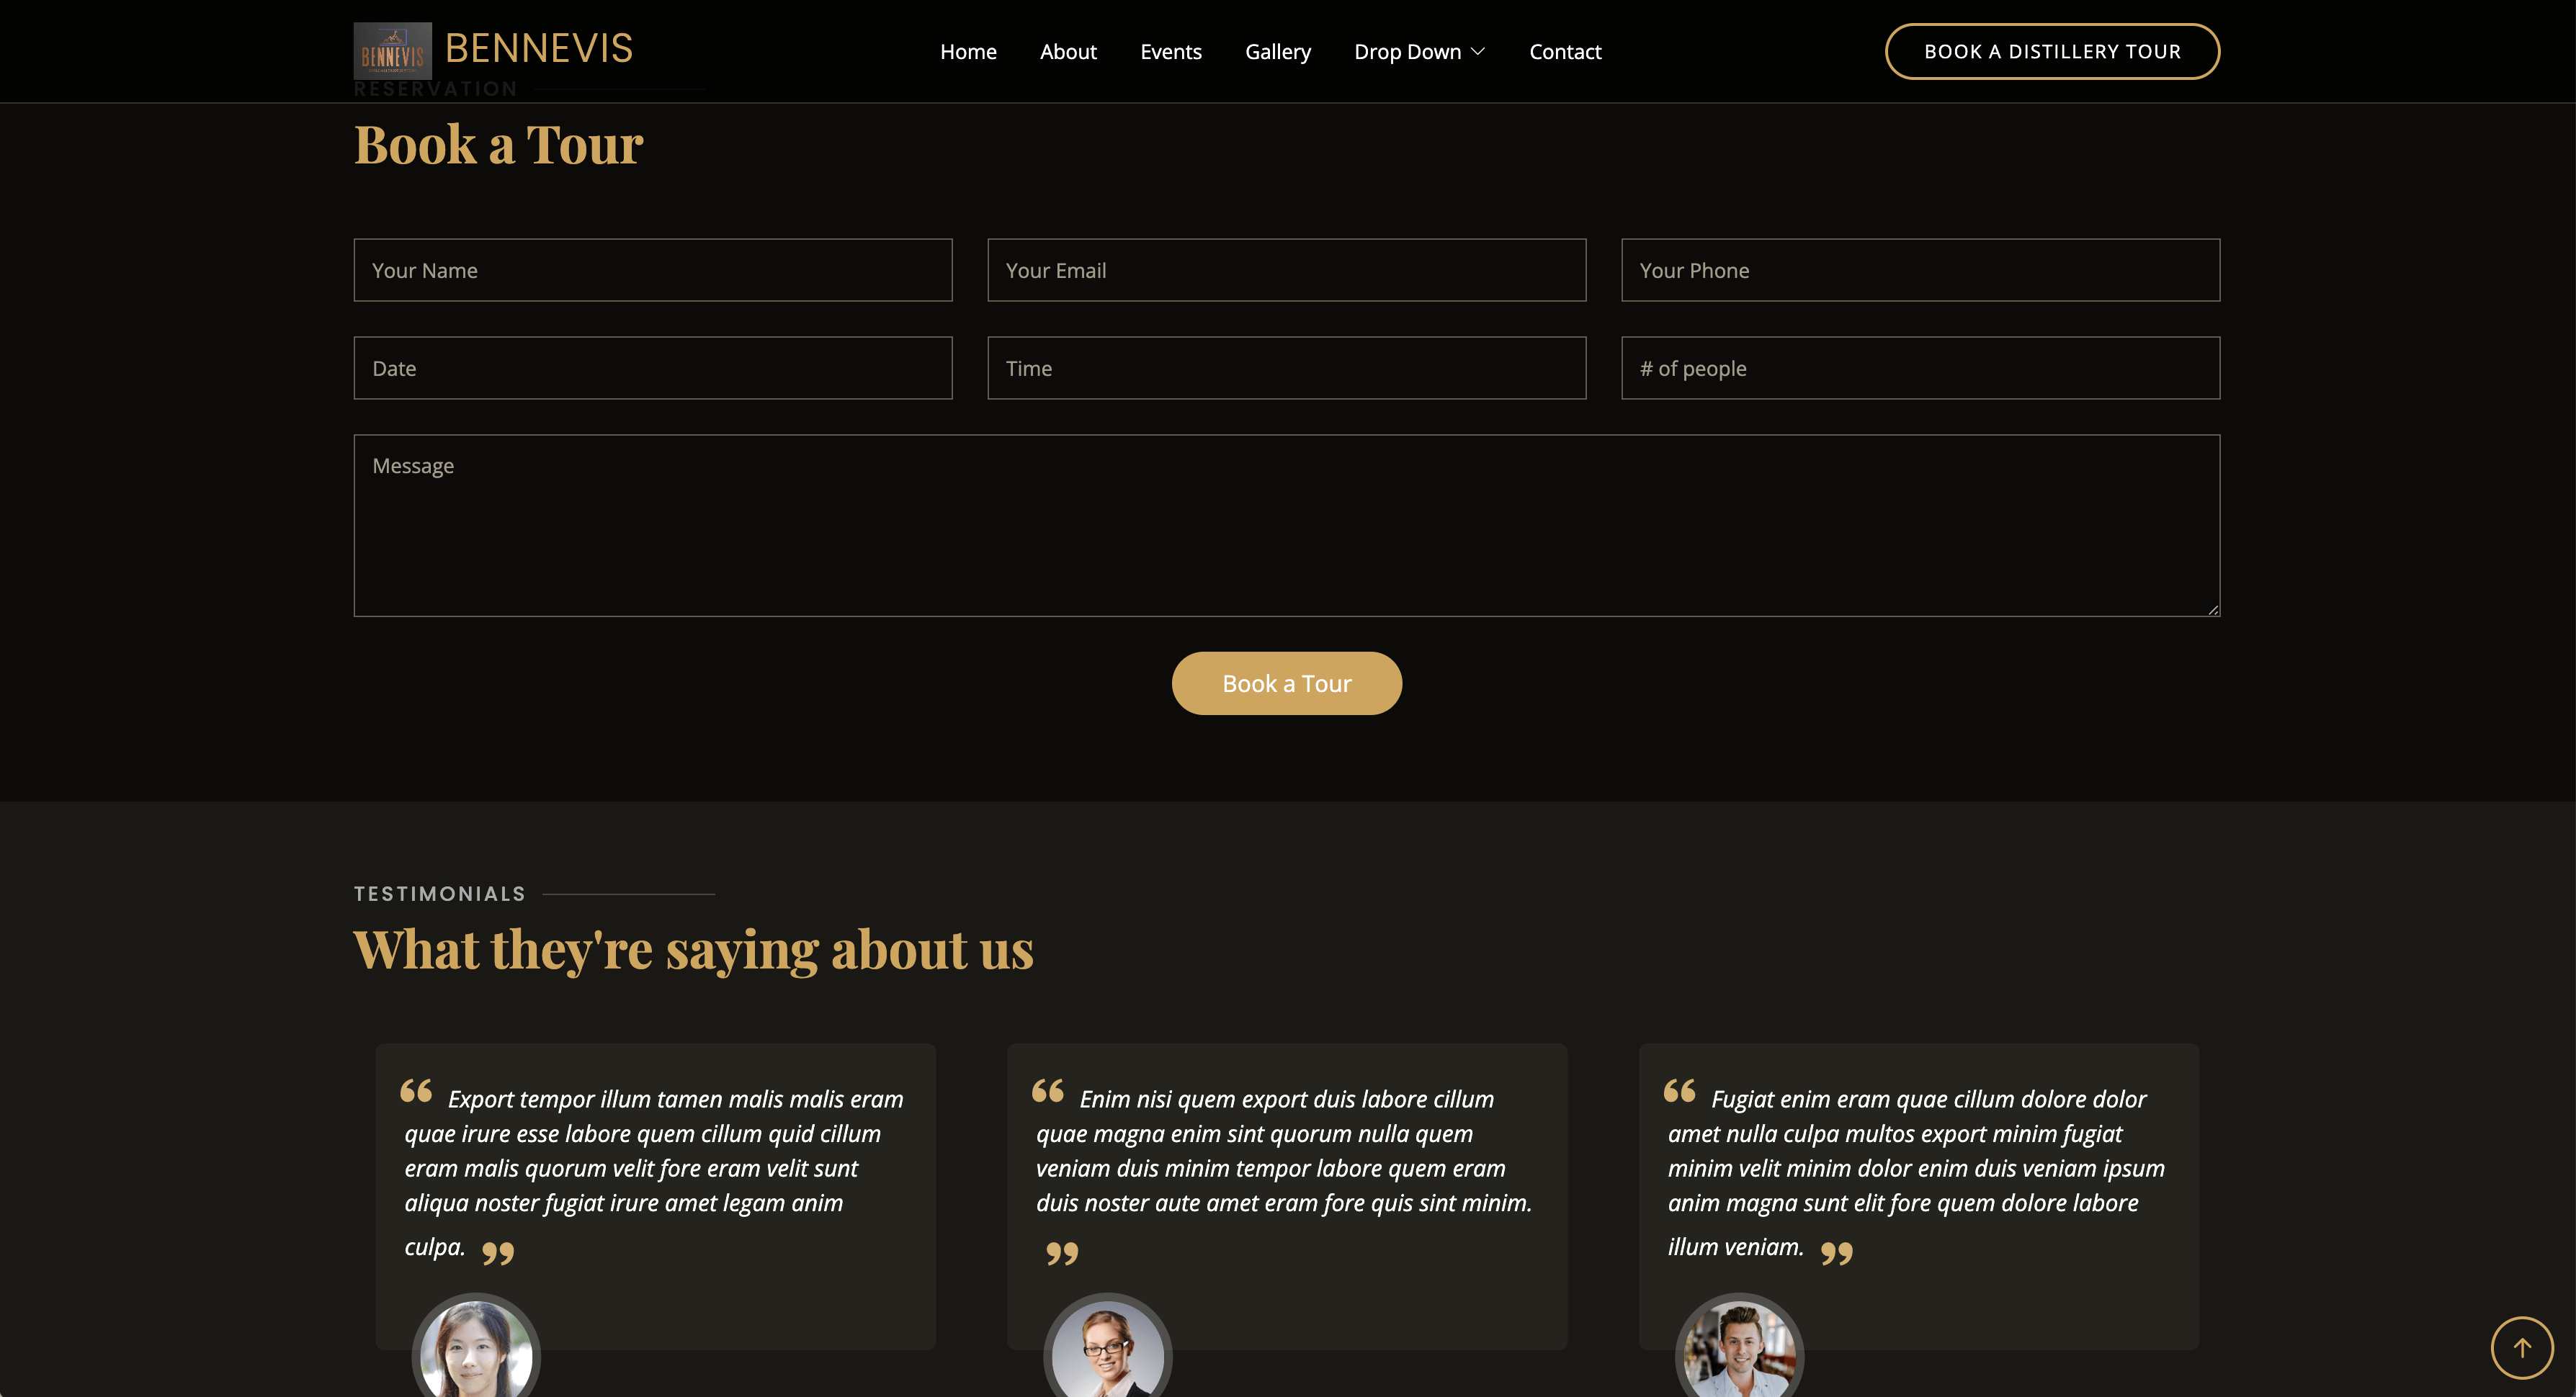 BenNavis Unternehmens-Website